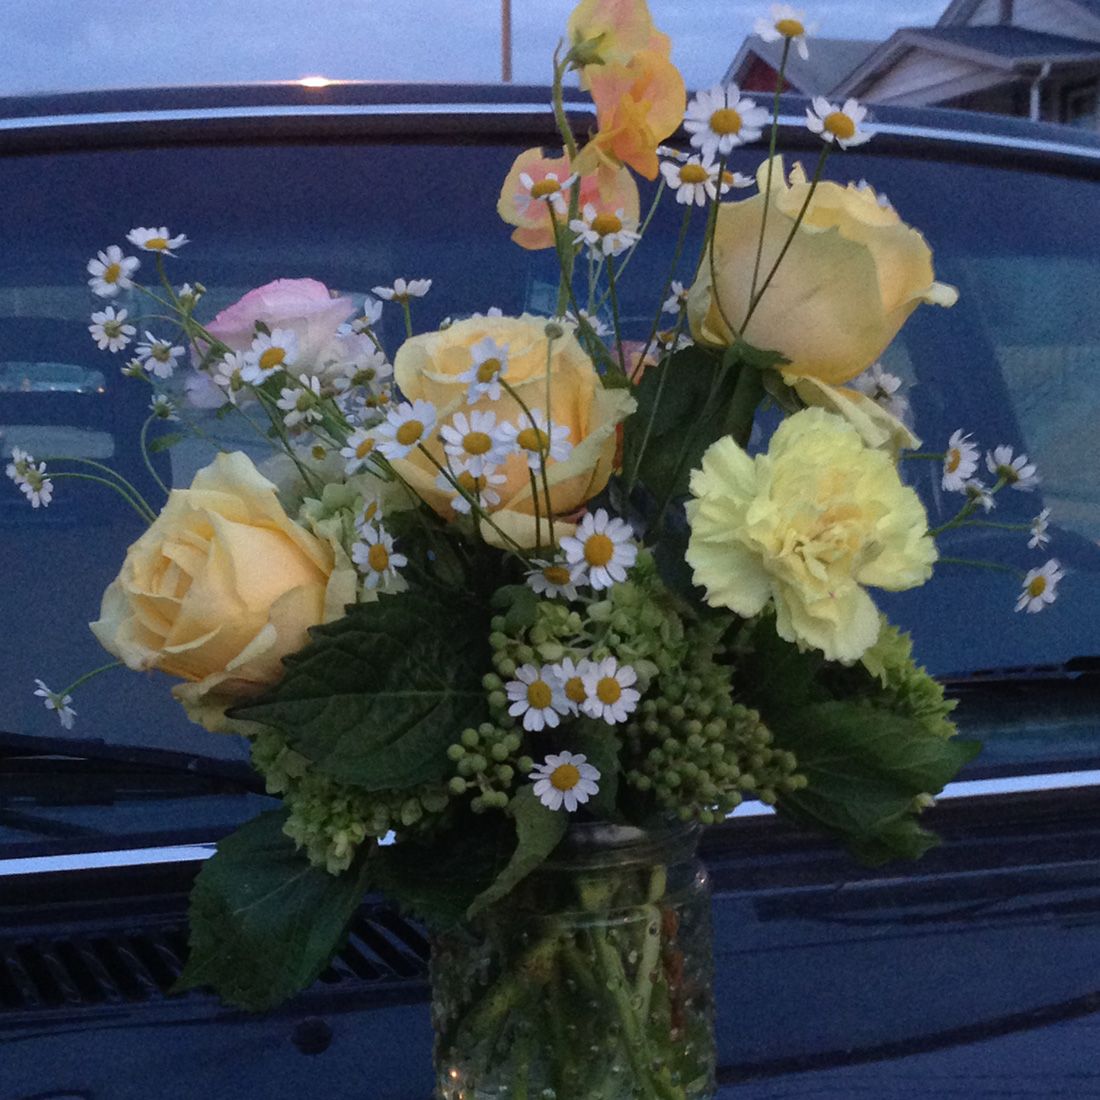 close-up of flower arrangement on back of car